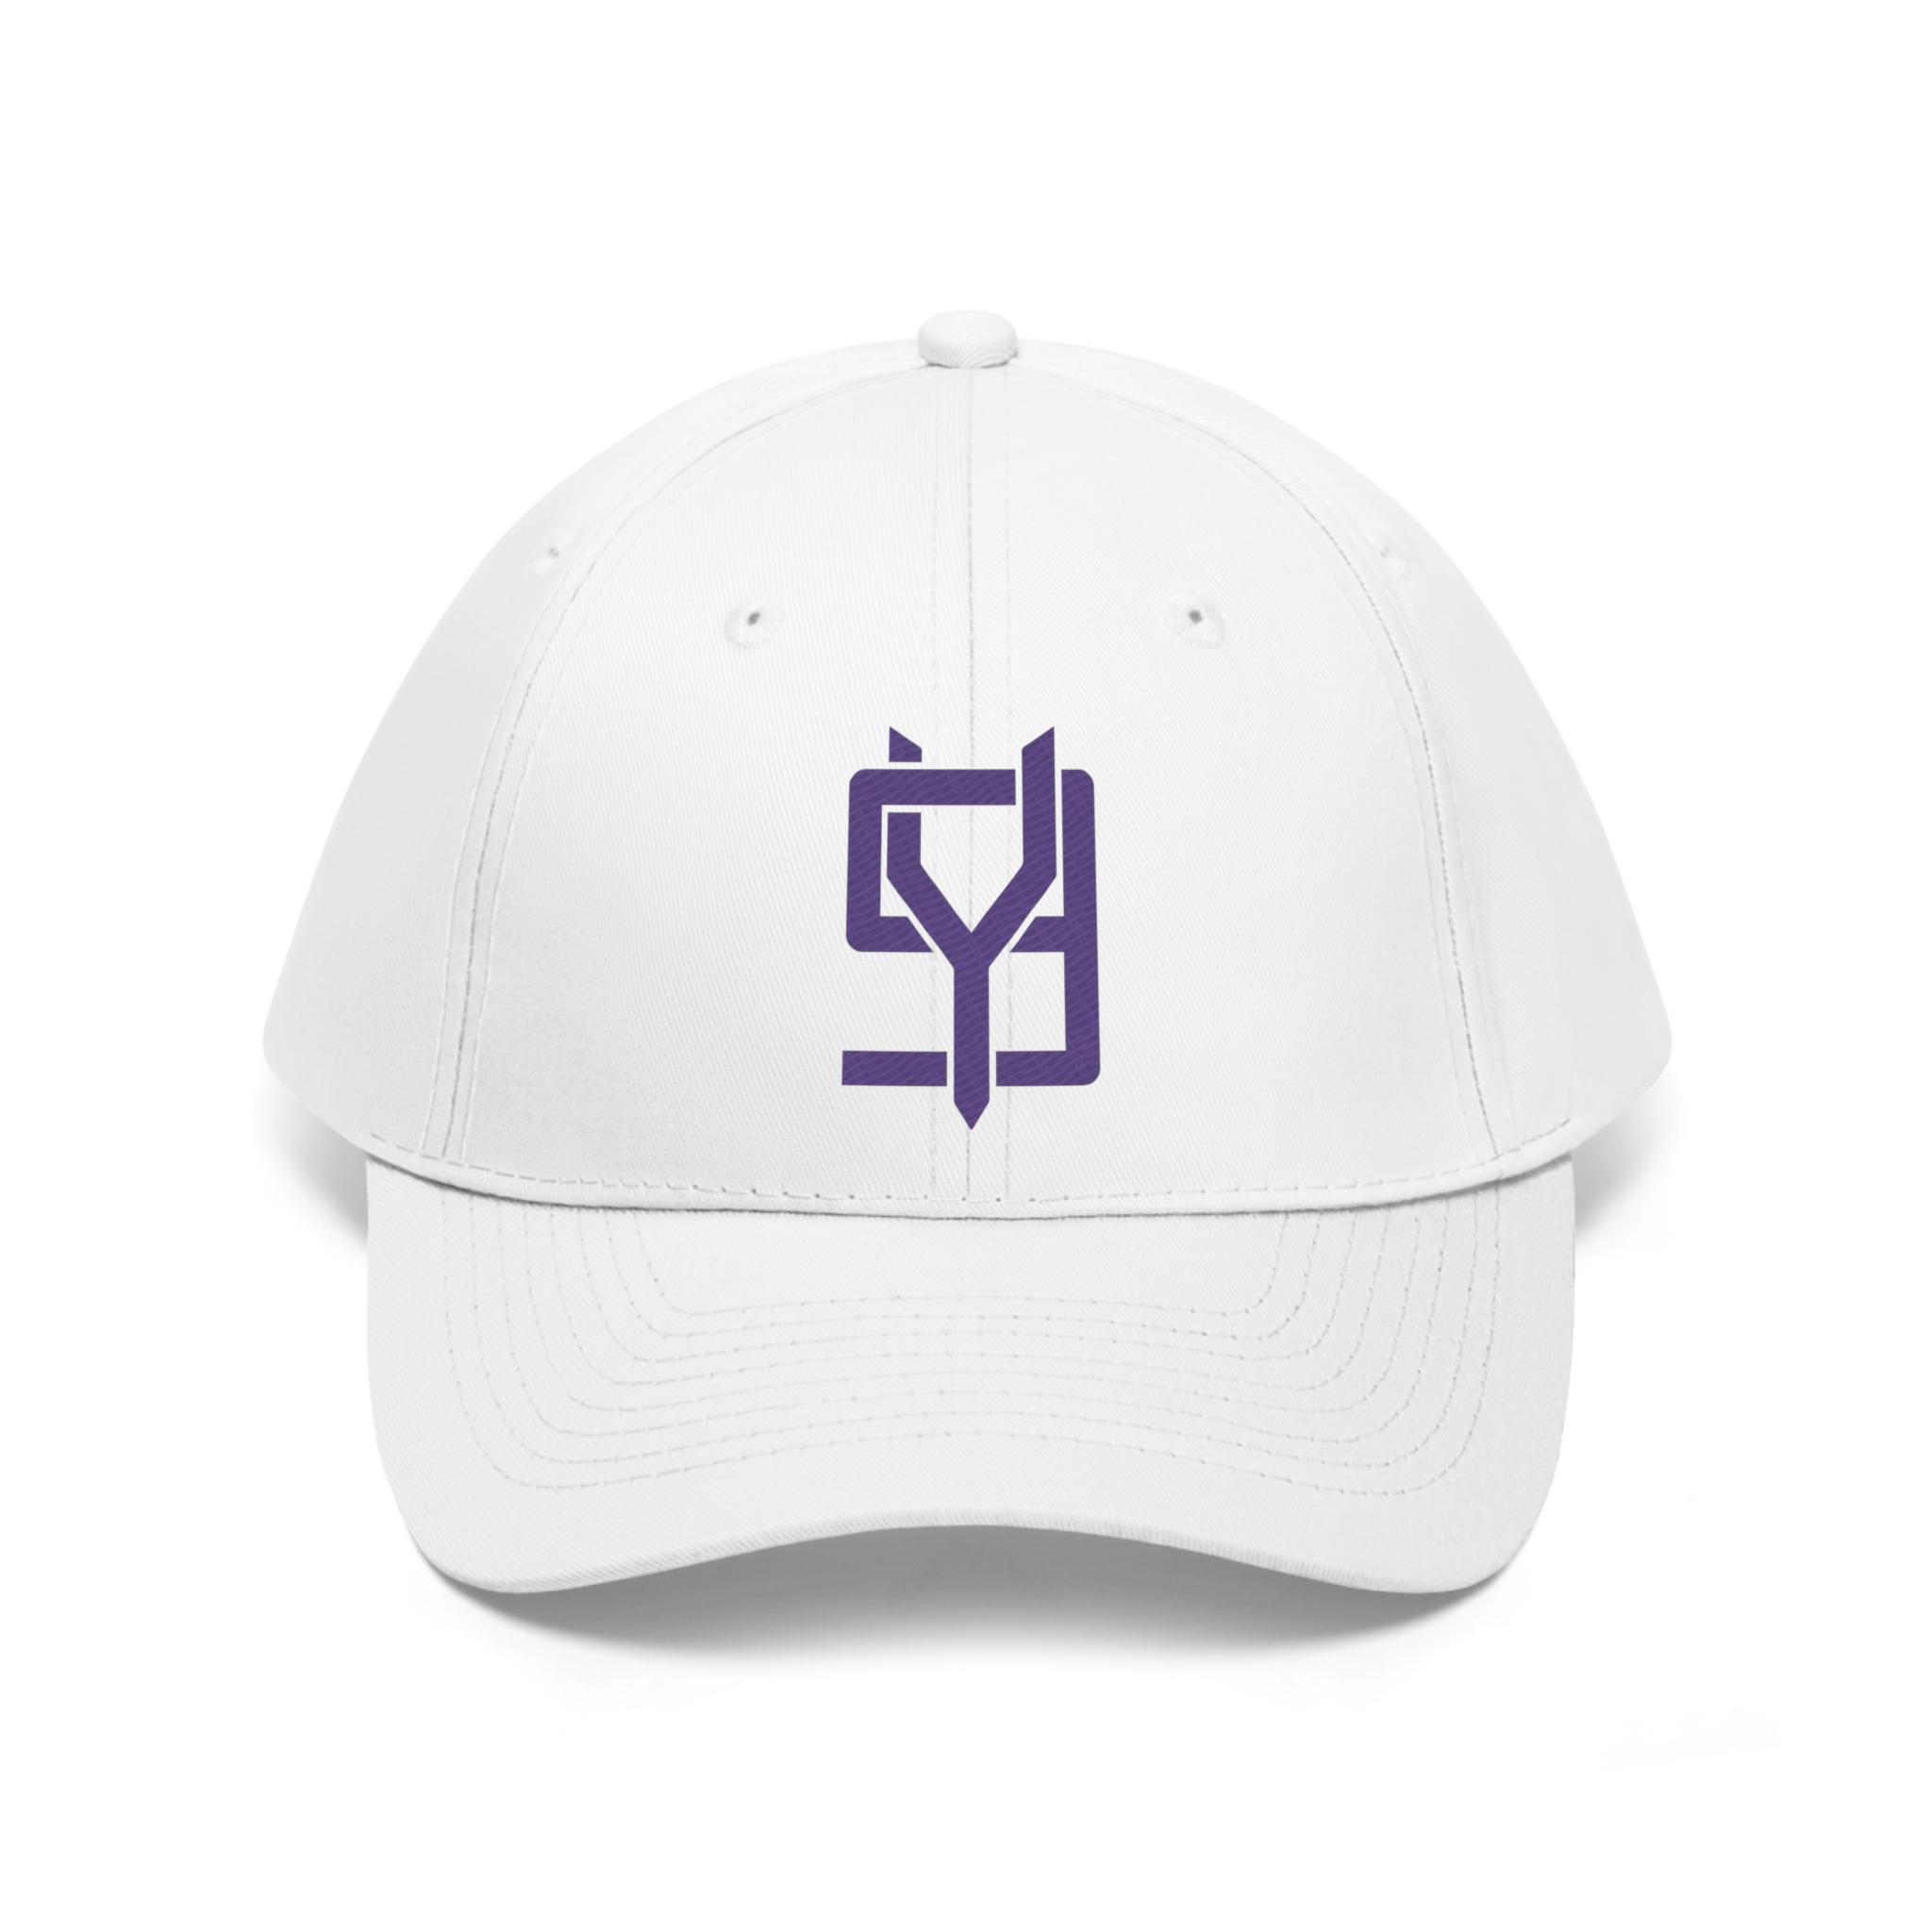 9Y logo hat